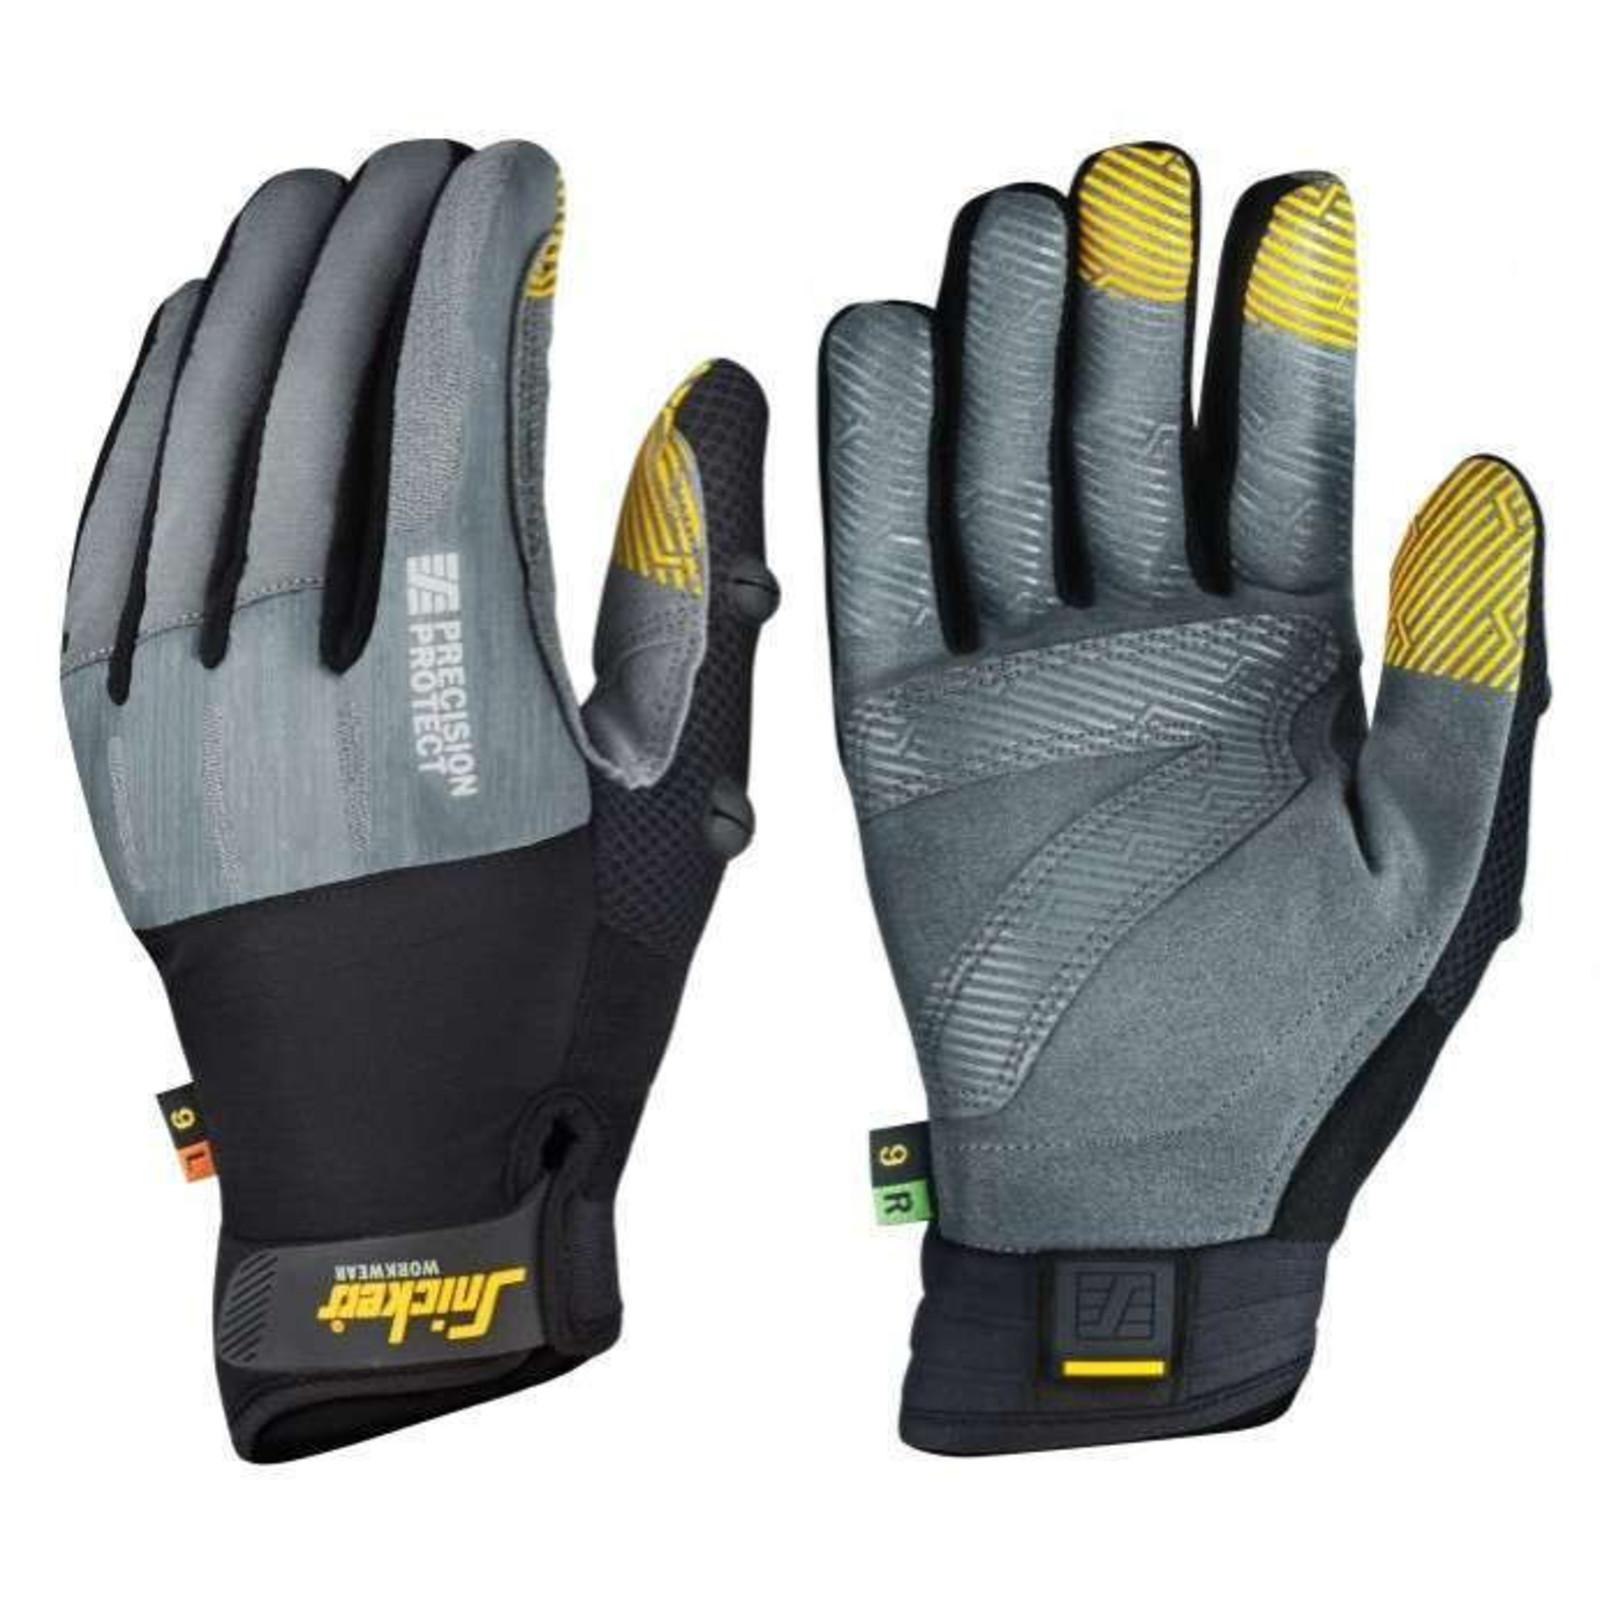 Pracovné rukavice Snickers® Precision Protect kombinované - veľkosť: 8/M, farba: sivá/čierna